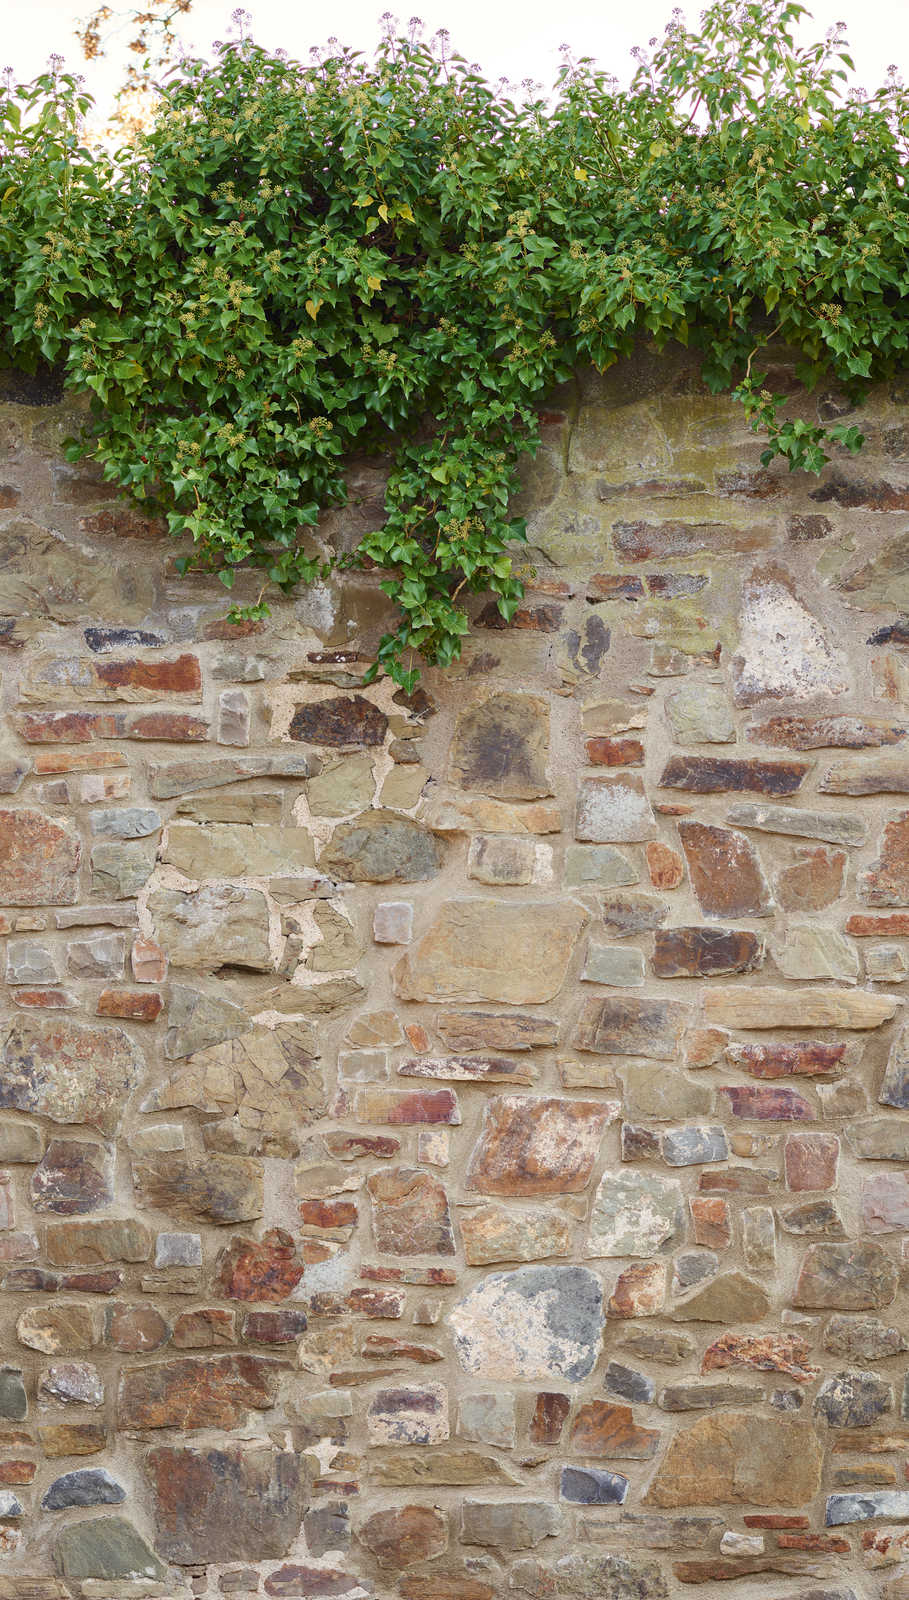             Stone Wall Optics Onderlaag behang met klimopstruiken - Beige, Bruin, Groen
        